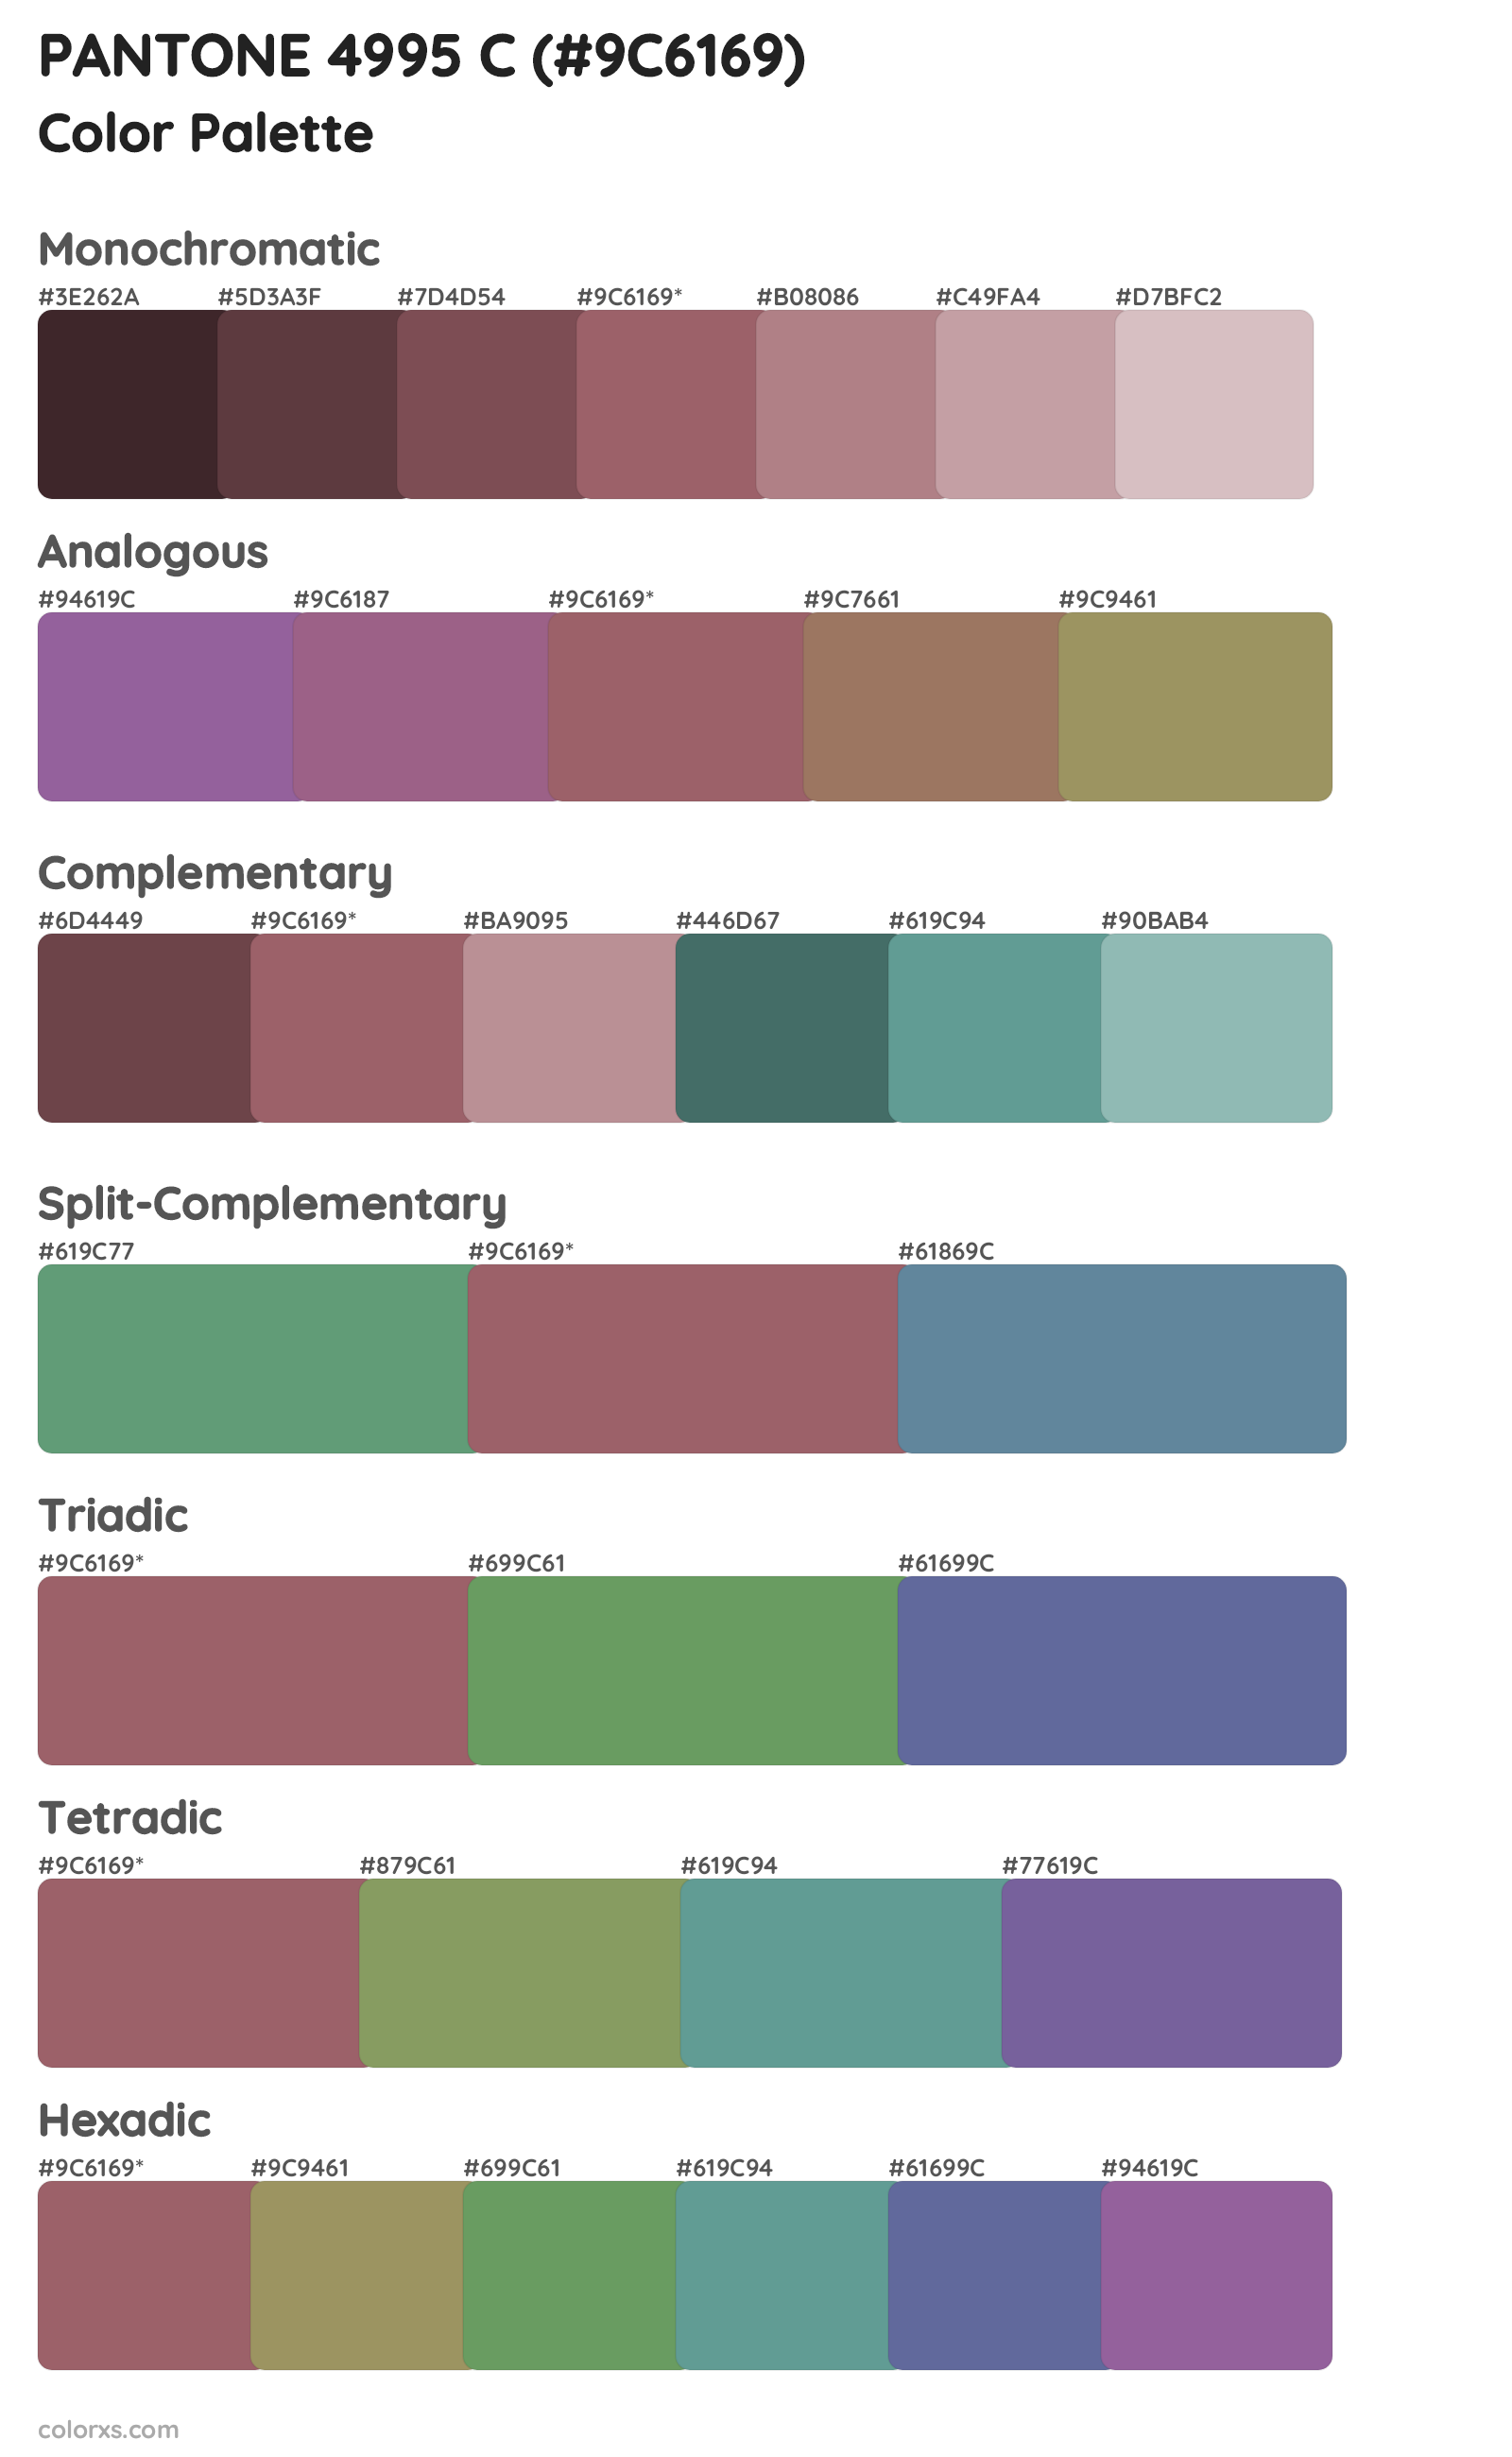 PANTONE 4995 C Color Scheme Palettes